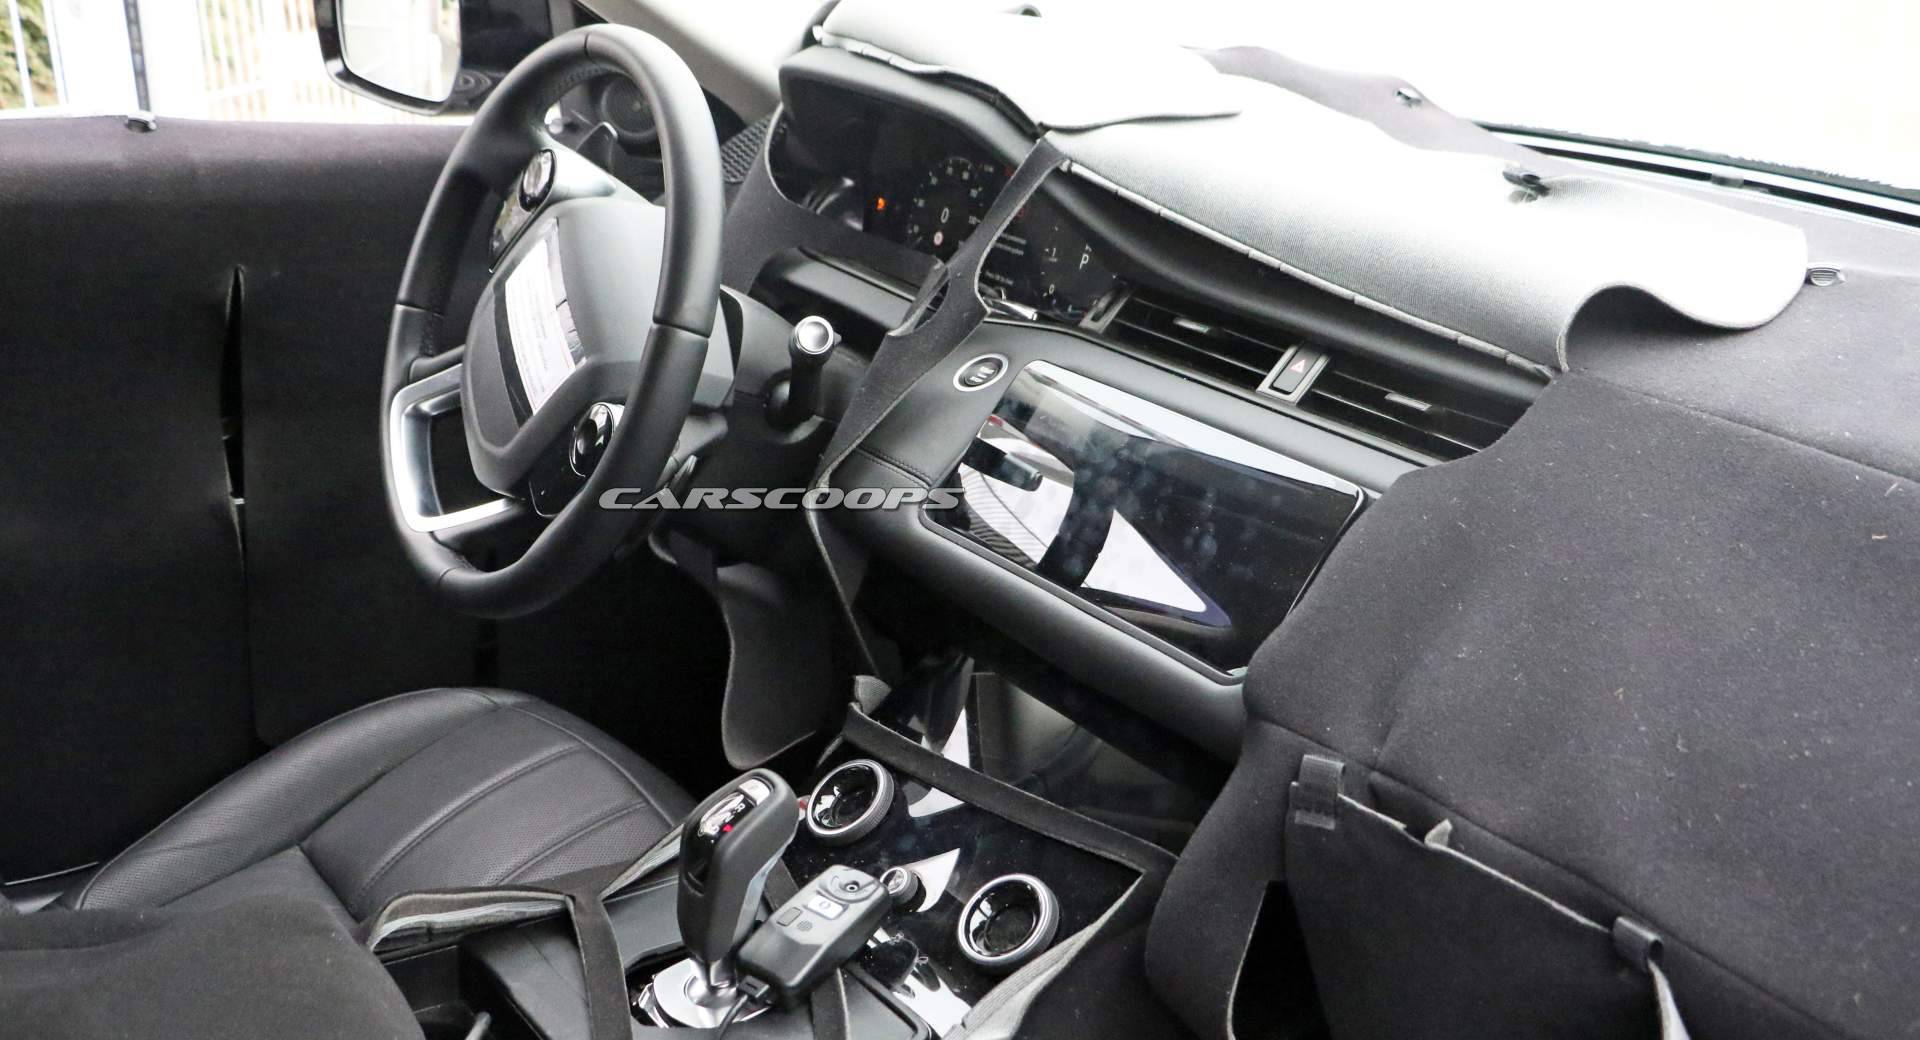 2019 Range Rover Evoque Looks Like A Baby Velar Inside Too